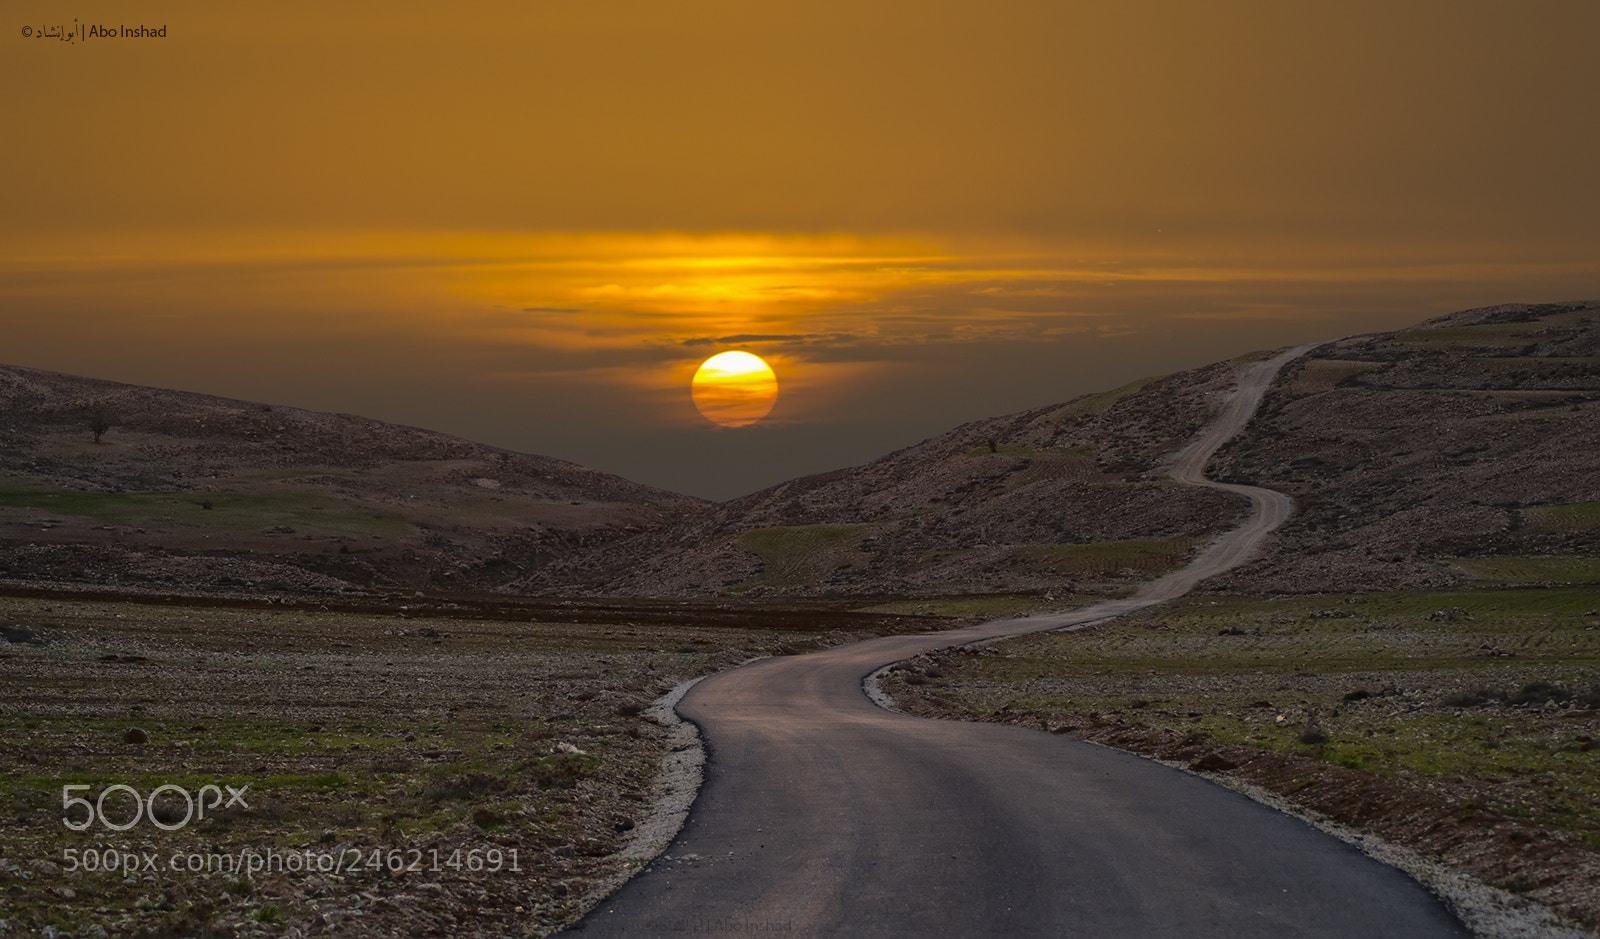 Nikon D300S sample photo. Sharah mountain sunset photography